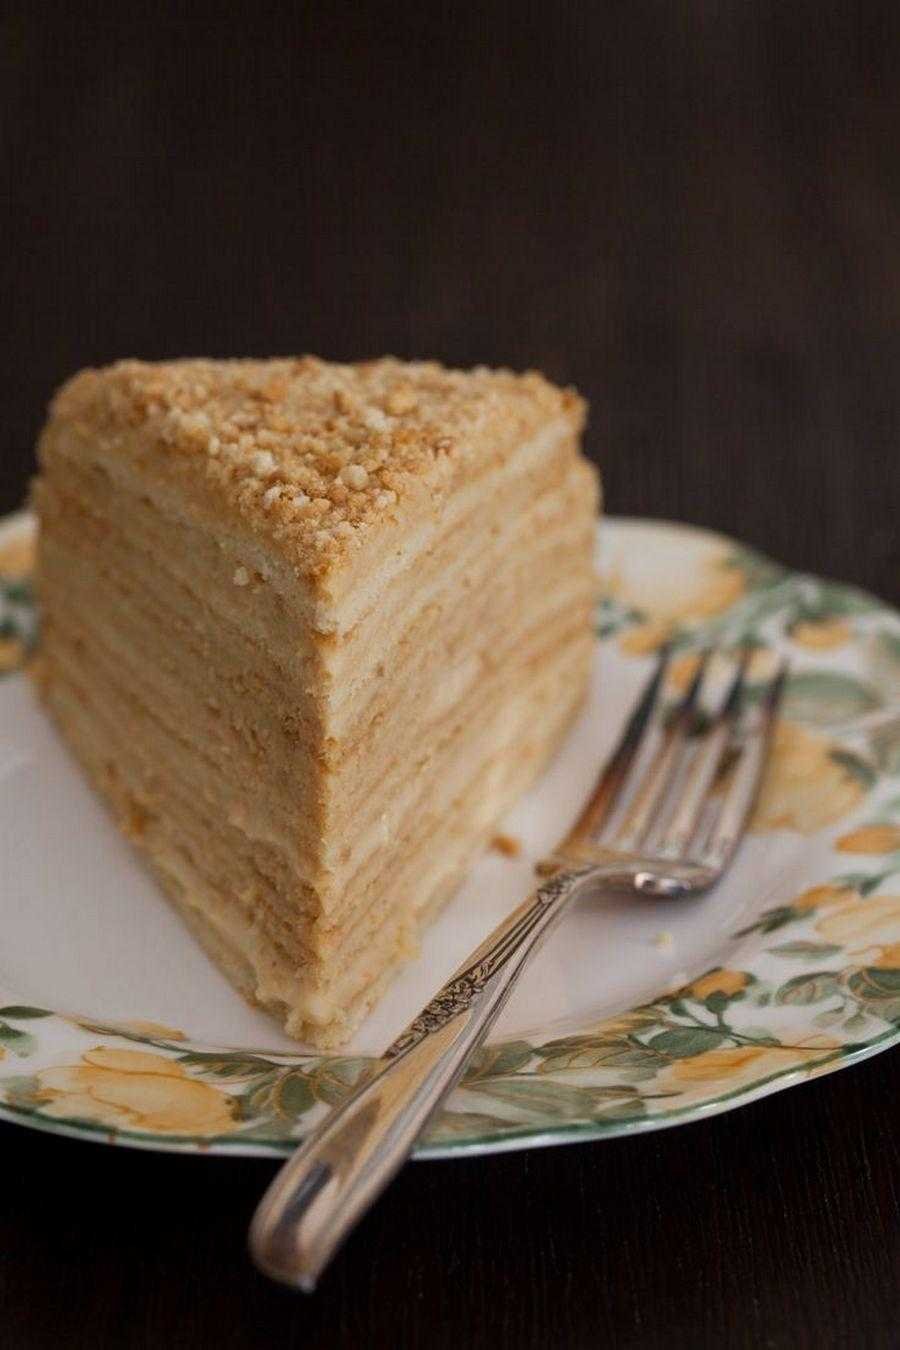 Торт Наполеон медовик